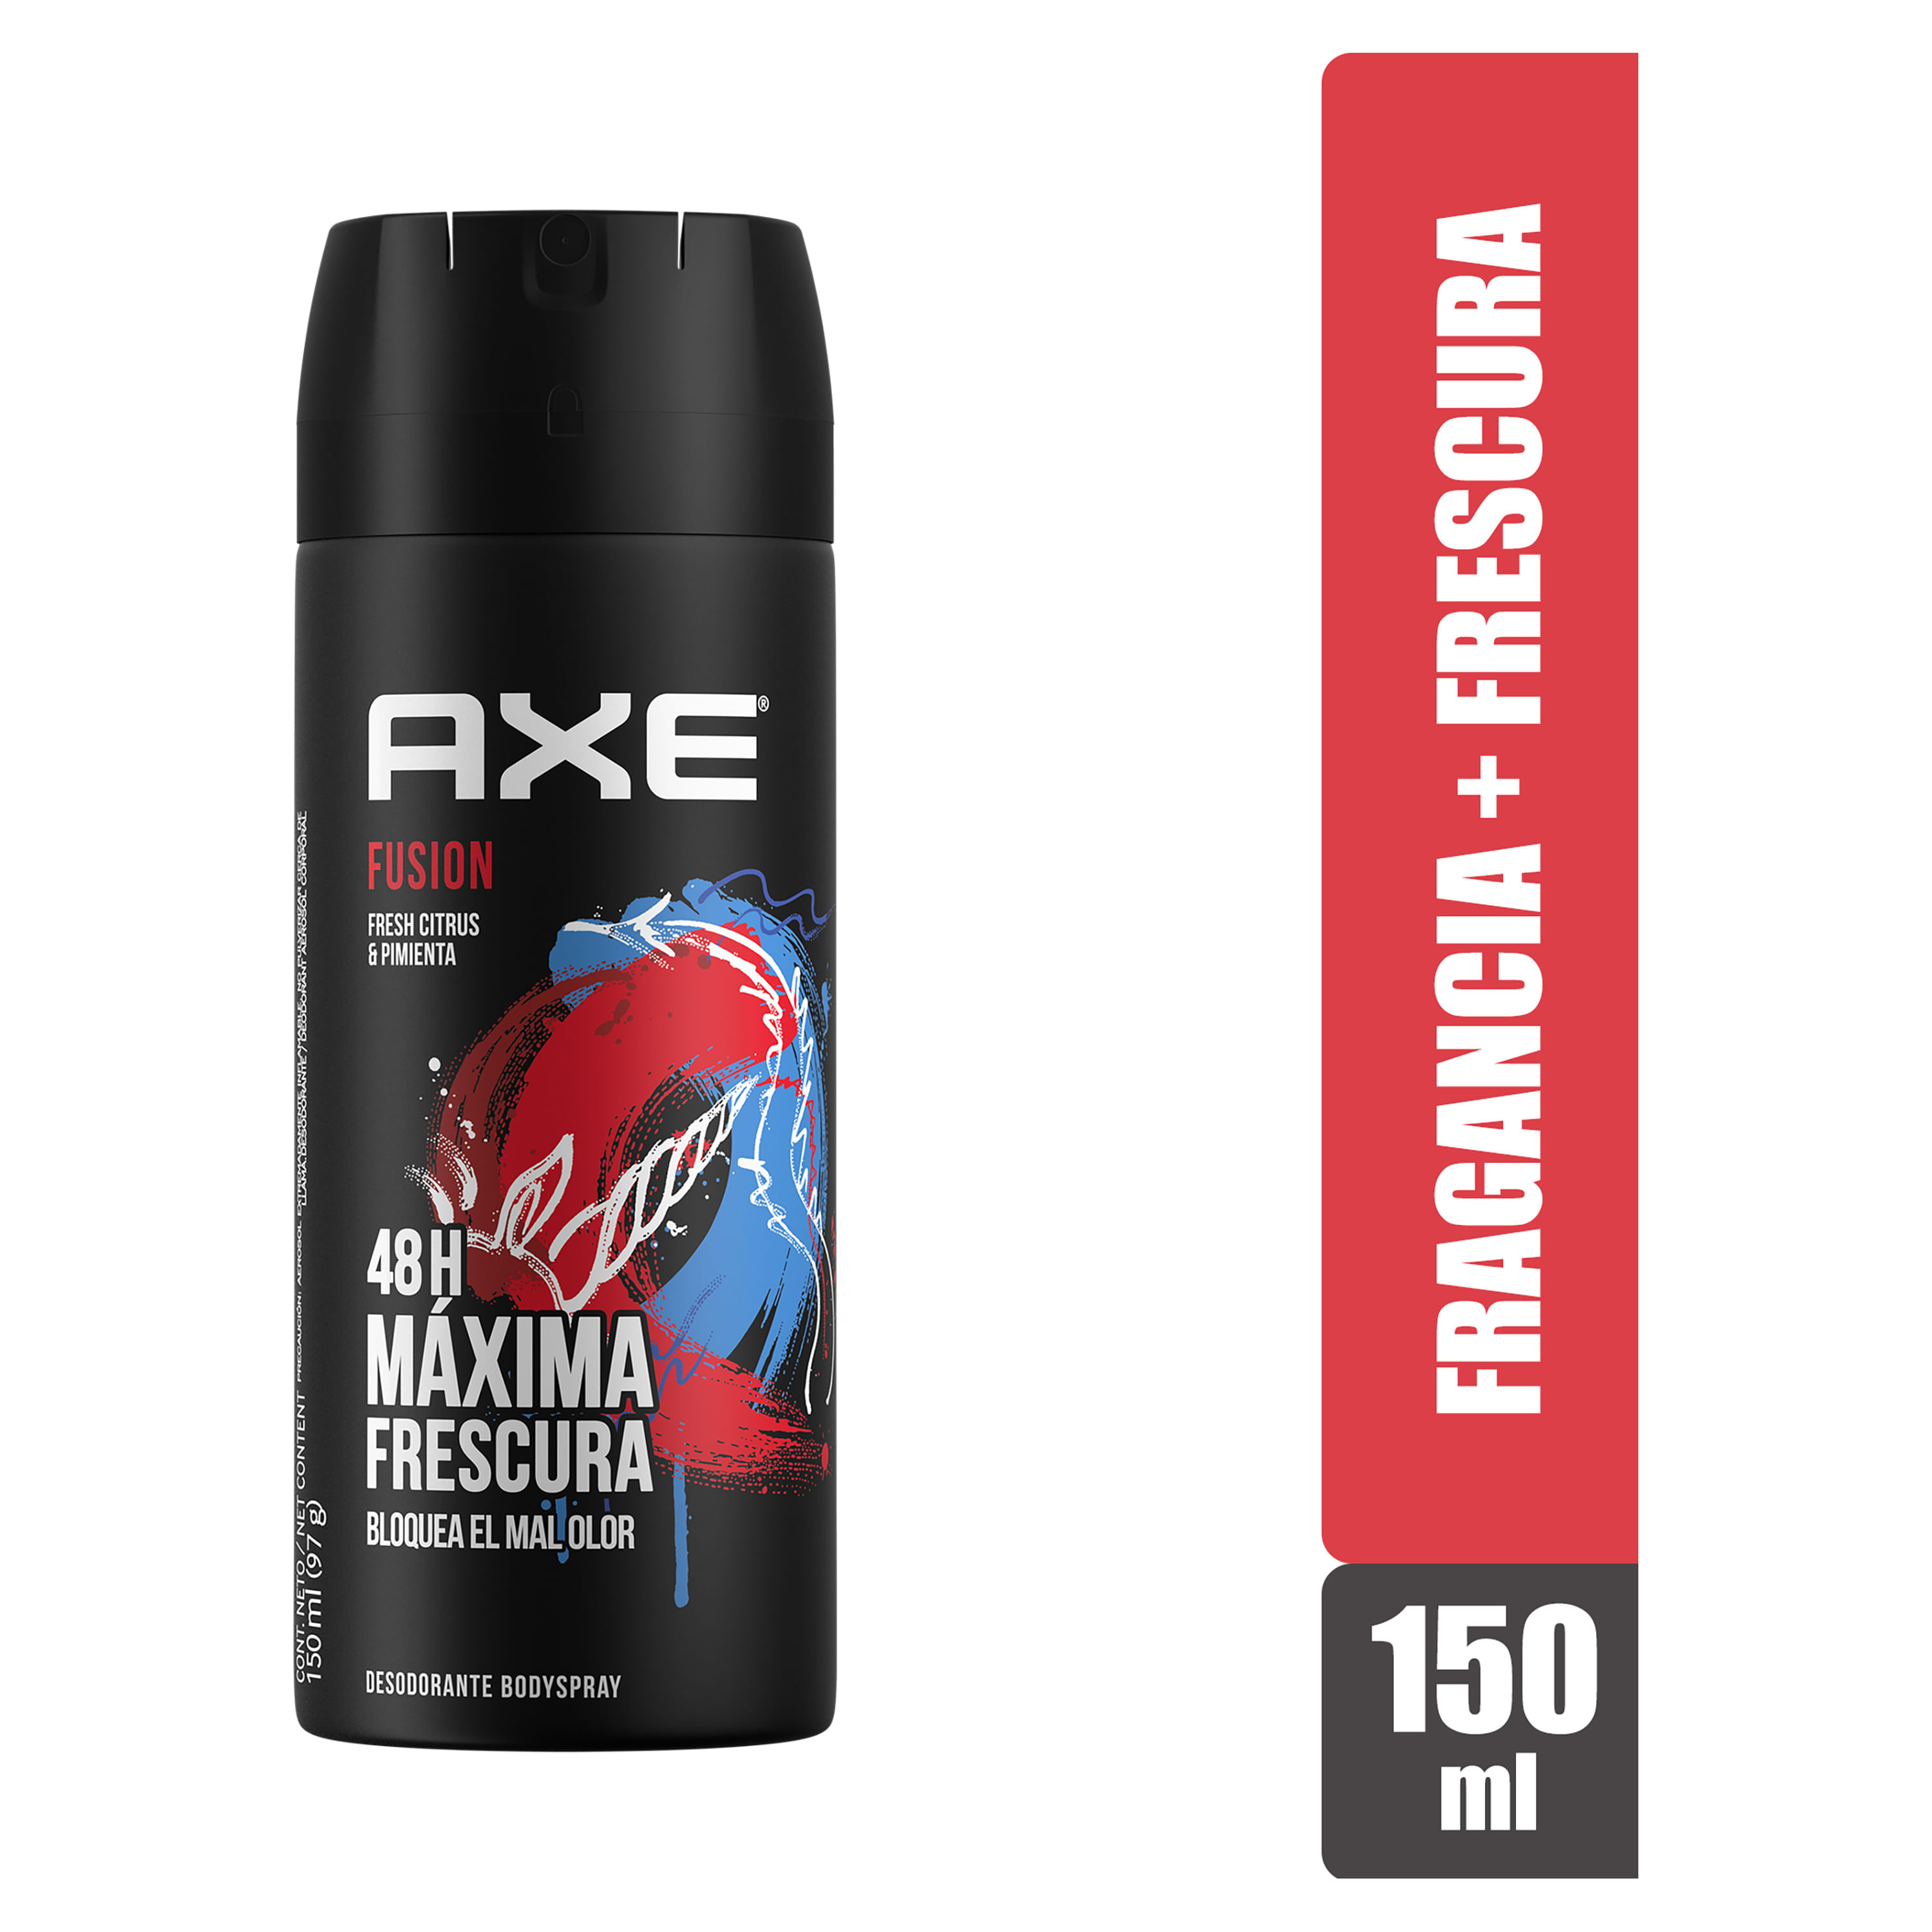 Desodorante-Body-Spray-Axe-Fusion-150ml-1-60911